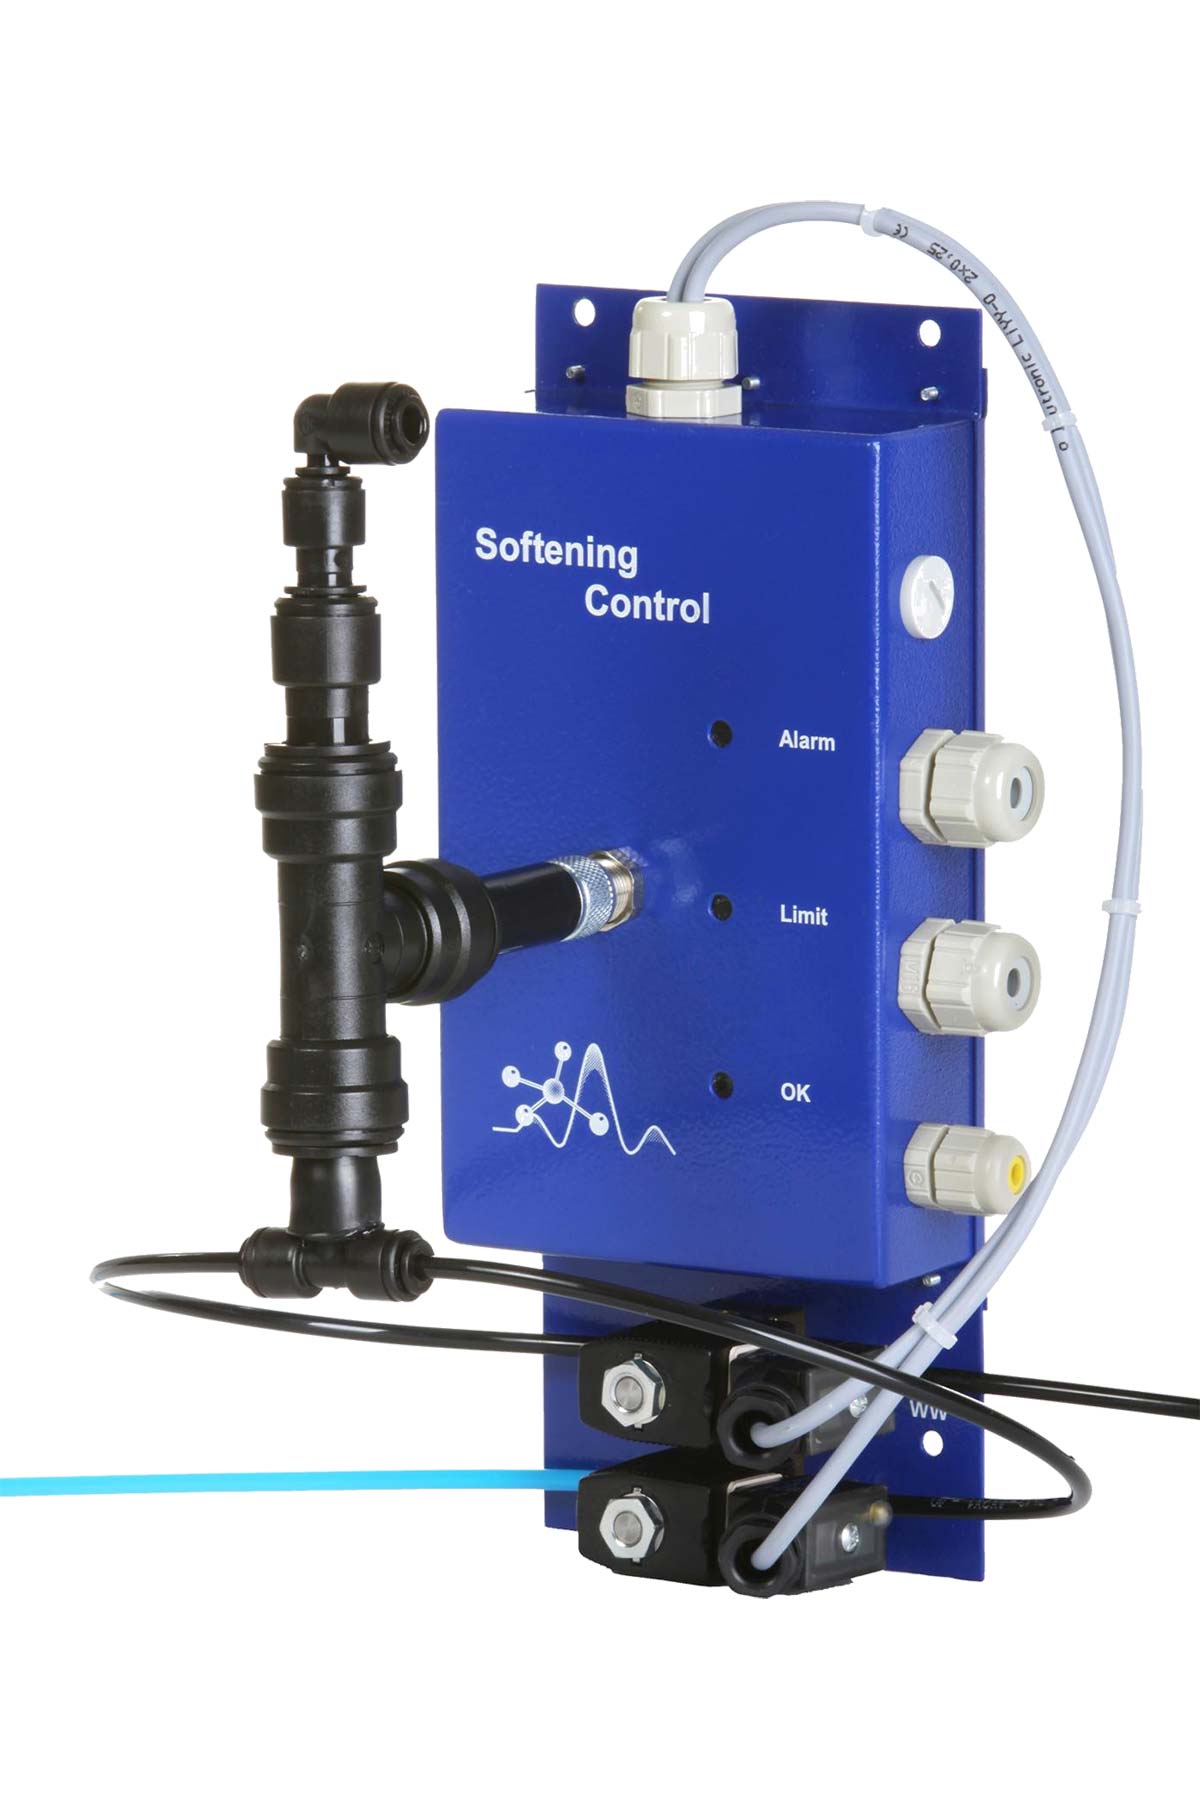  Softening Control bietet eine prozentuale Resthärteüberwachung in Bezug zur Rohwasserhärte bei Wasserenthärtern oder Umkehrosmosen. 